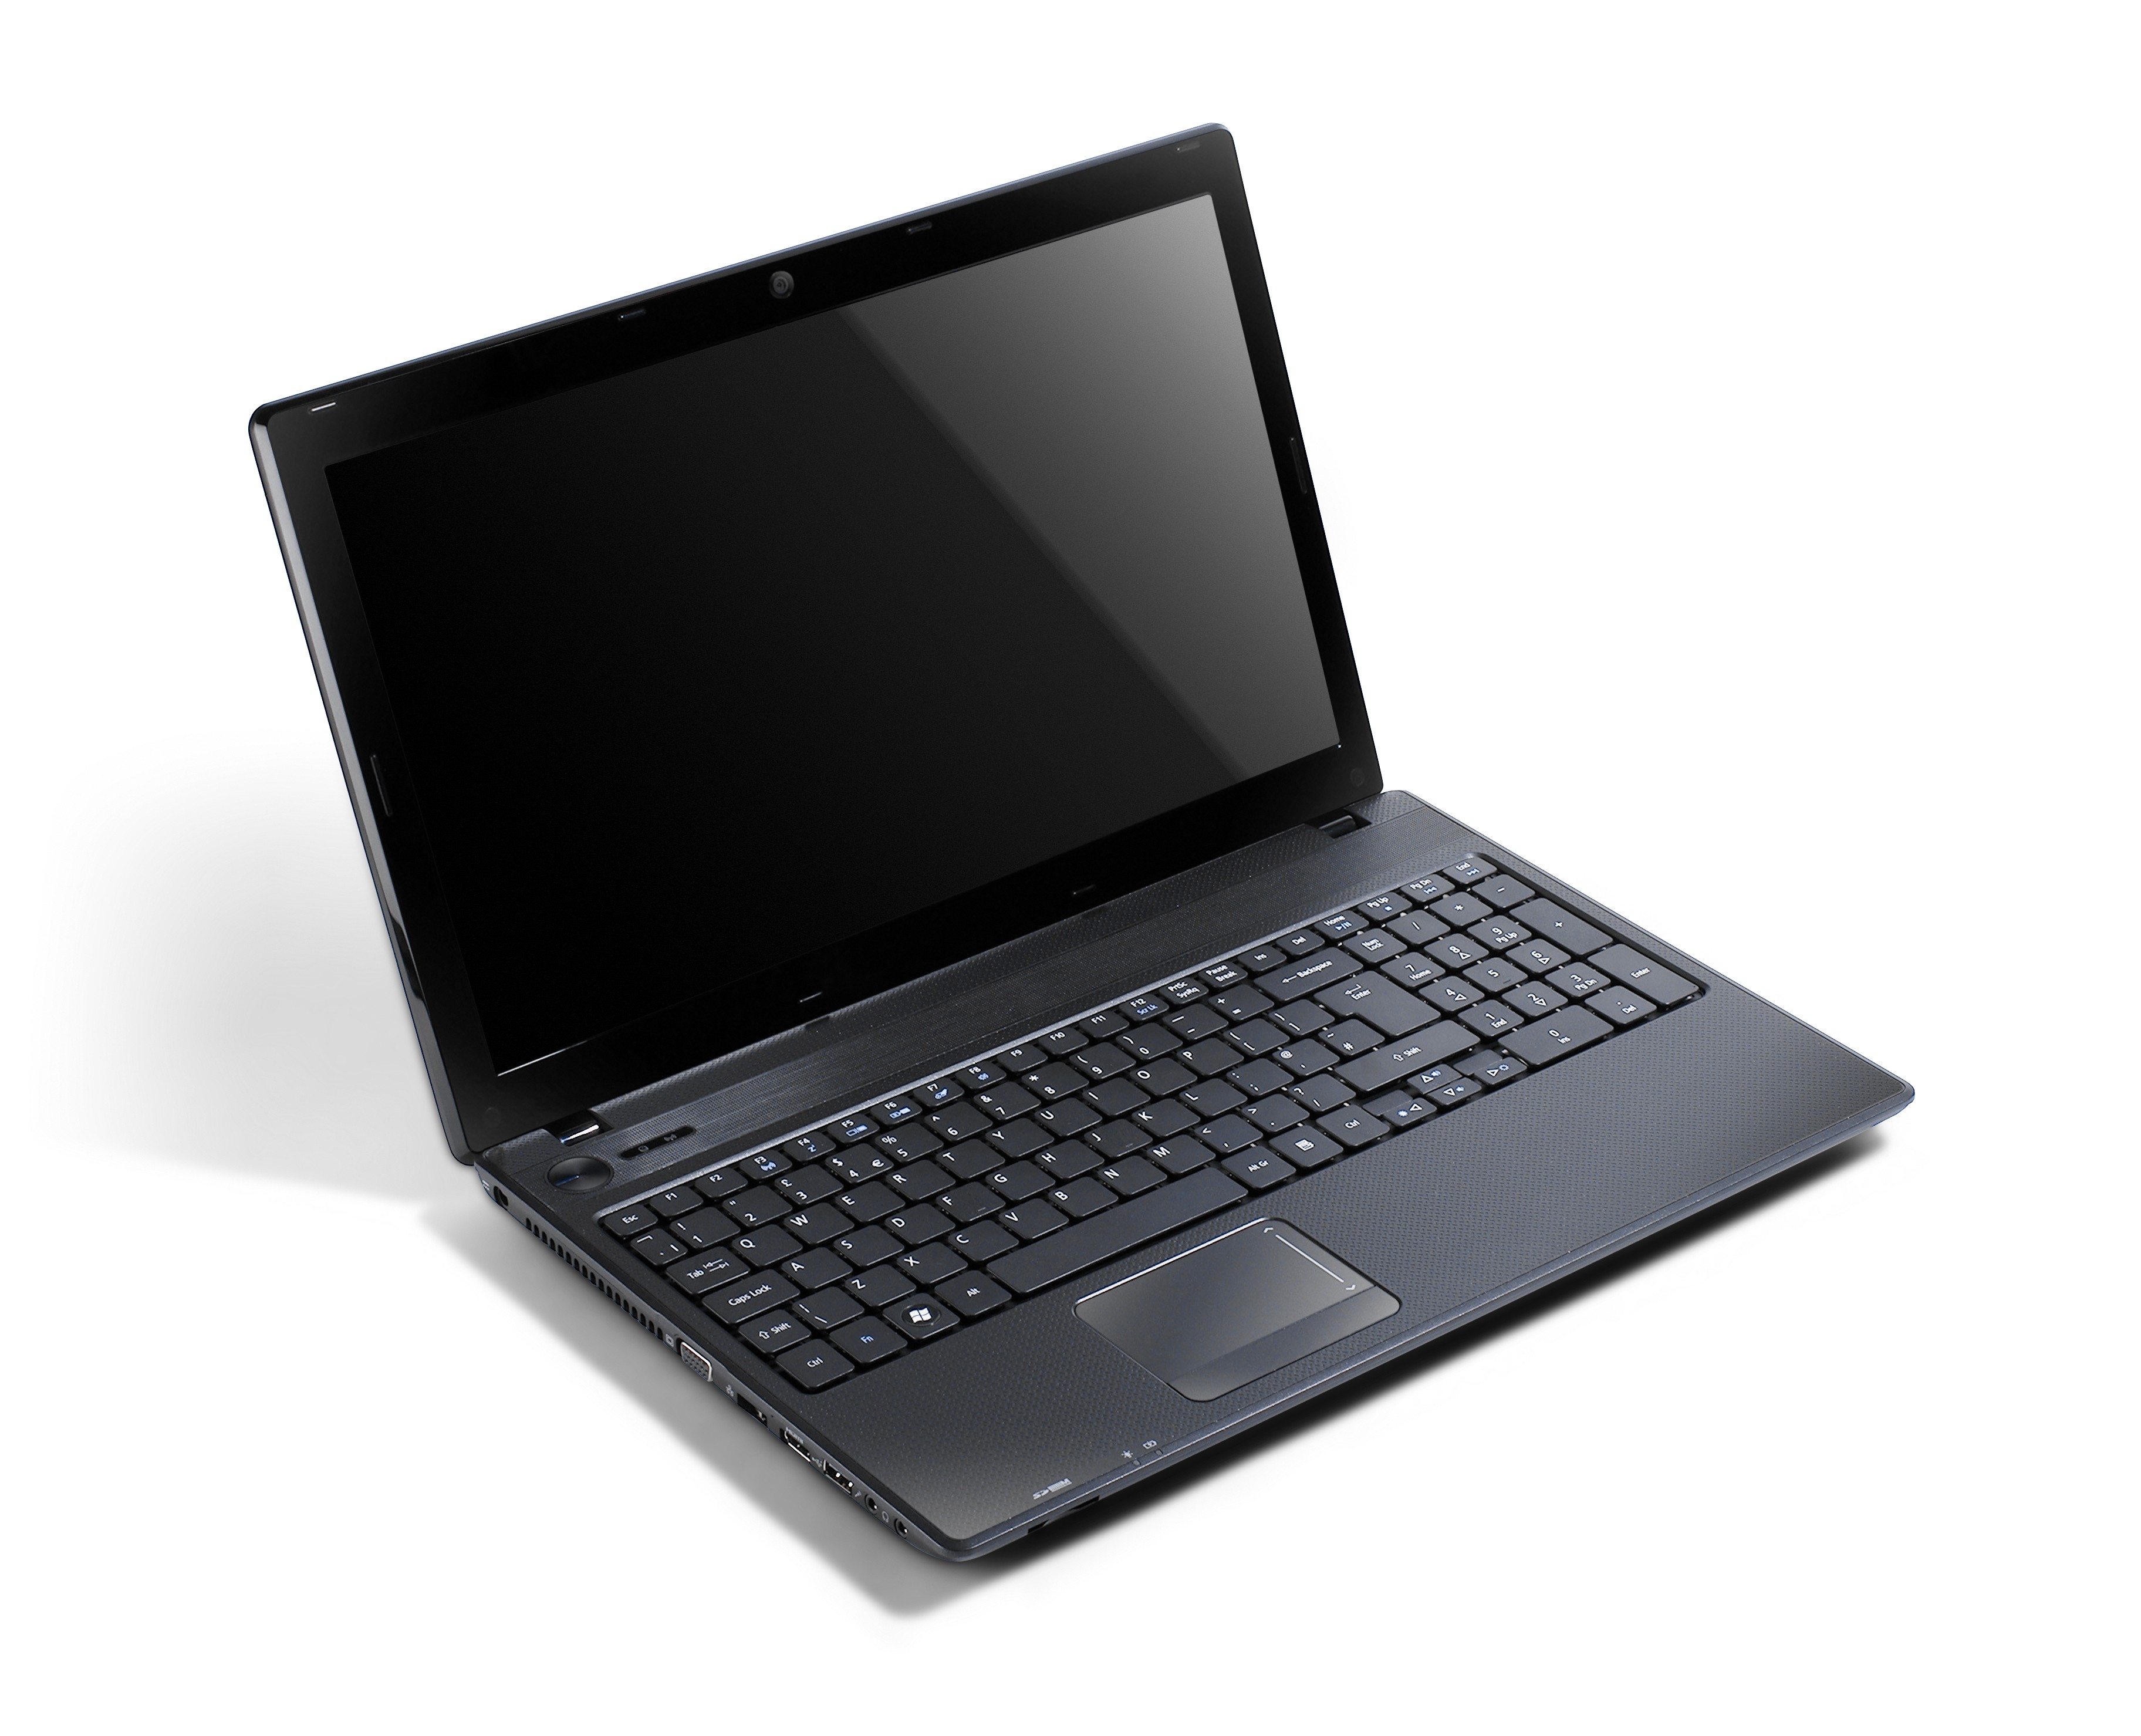 Купить Ноутбук Acer Aspire 5742z